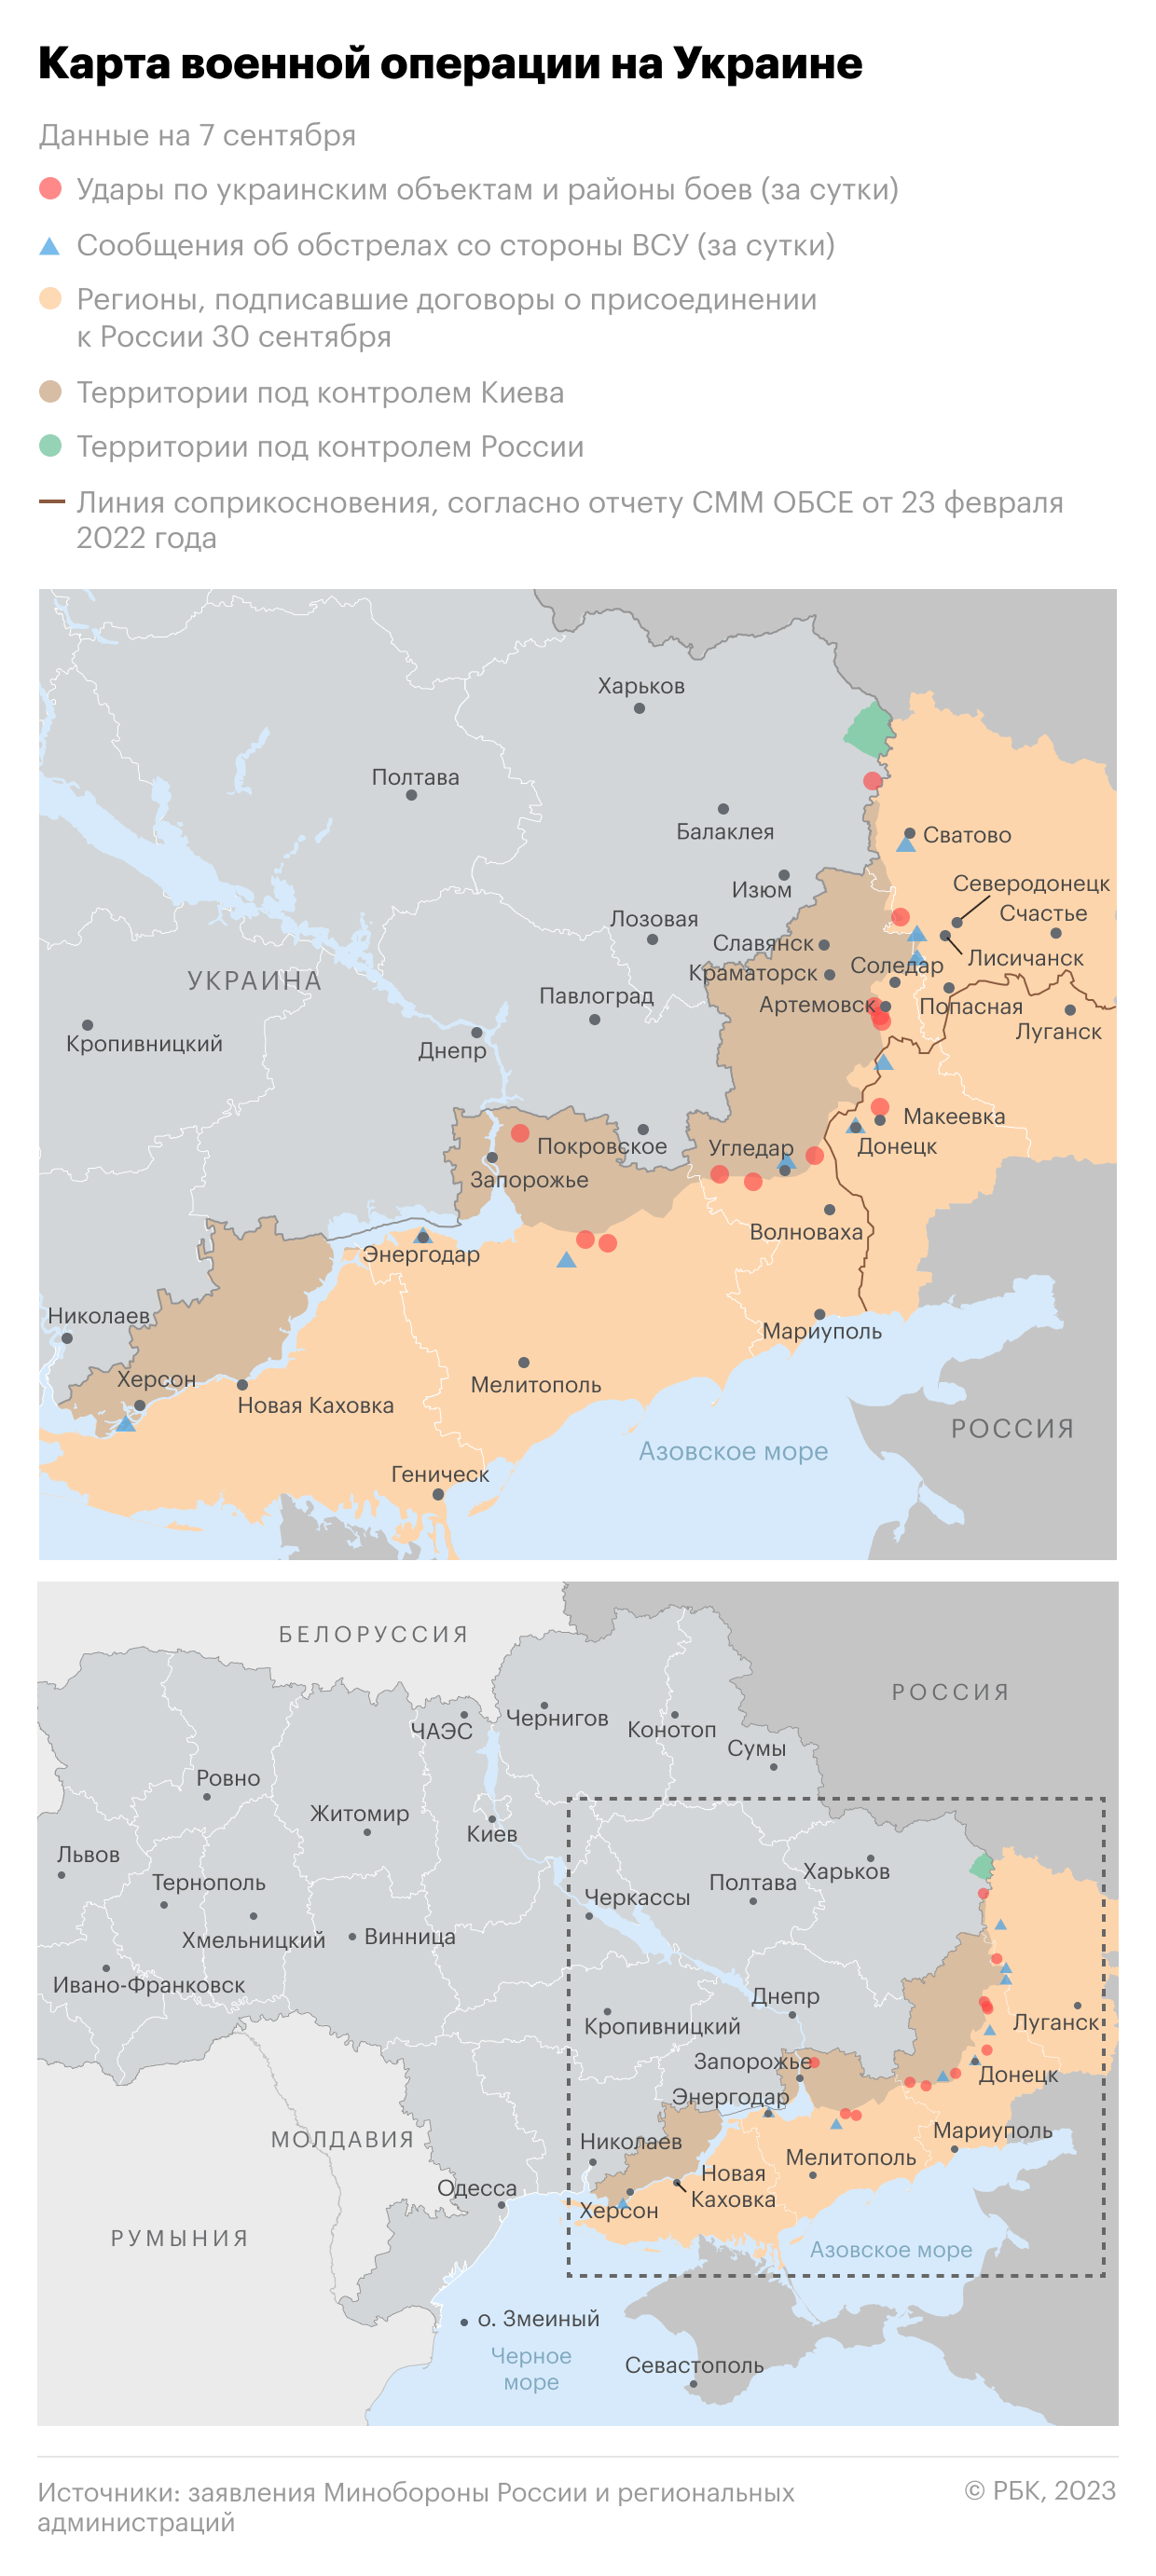 Военная операция на Украине. Карта на 7 сентября